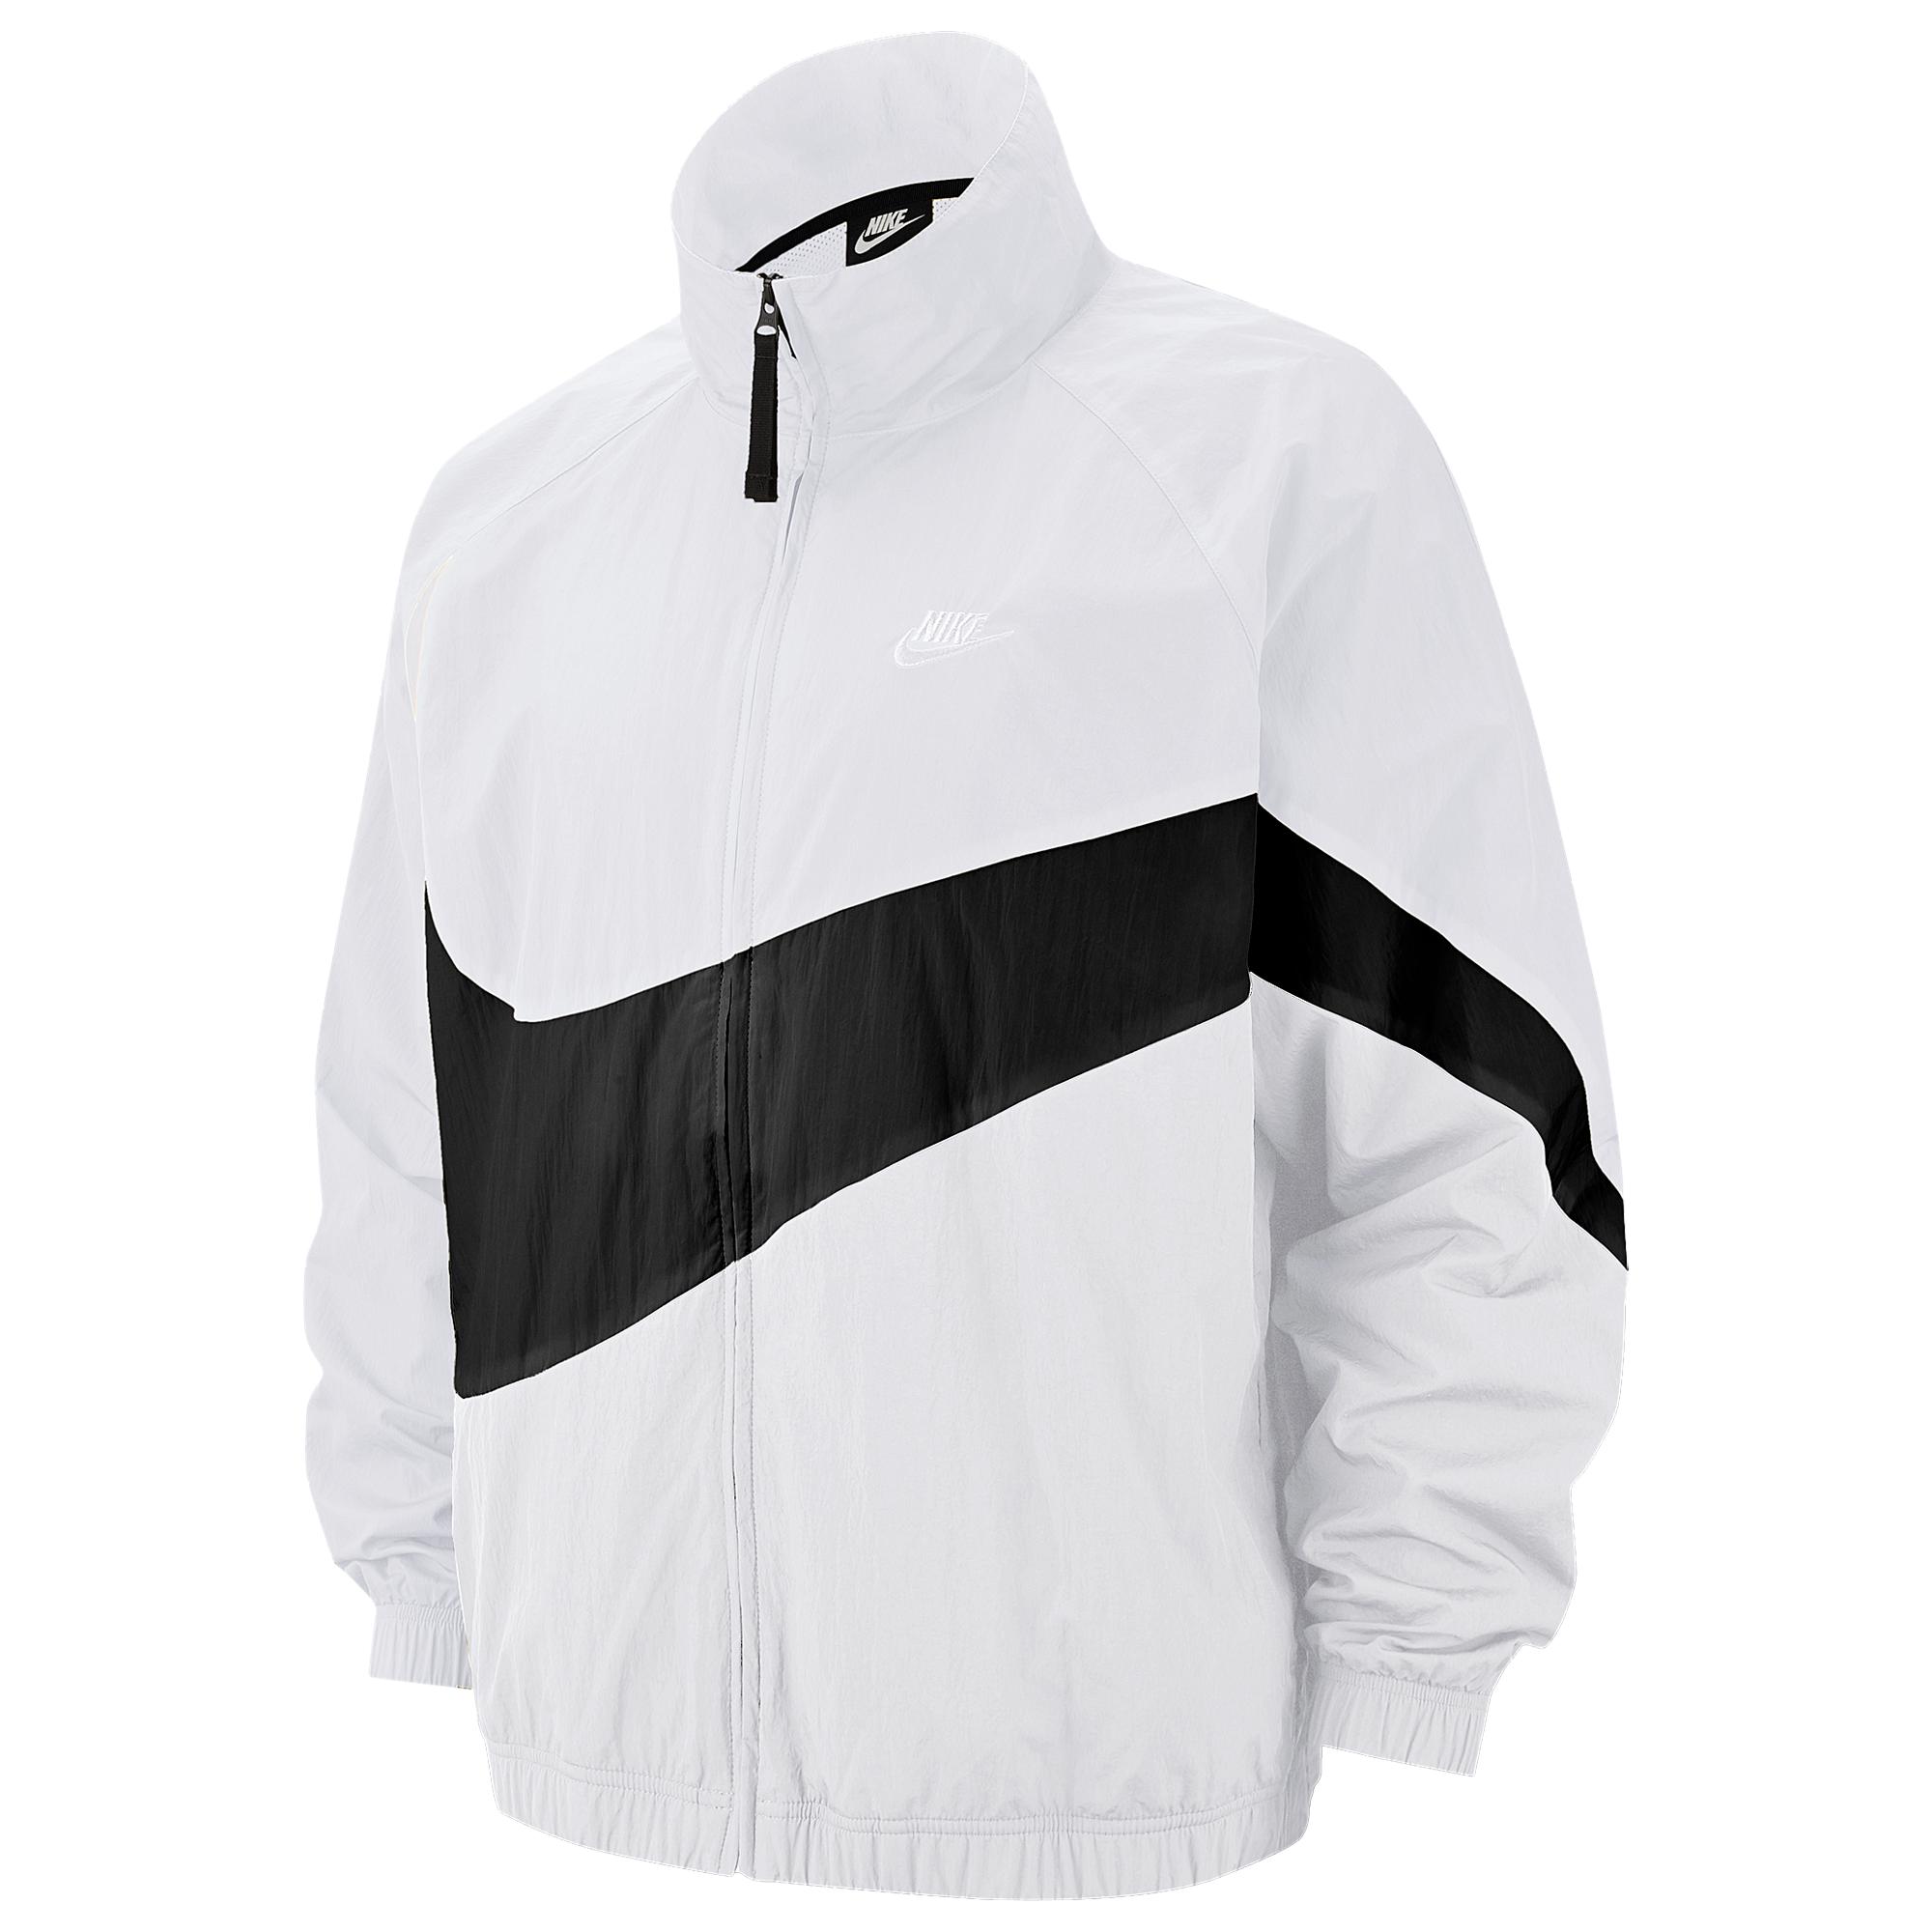 Nike Large Swoosh Windbreaker in White for Men - Lyst